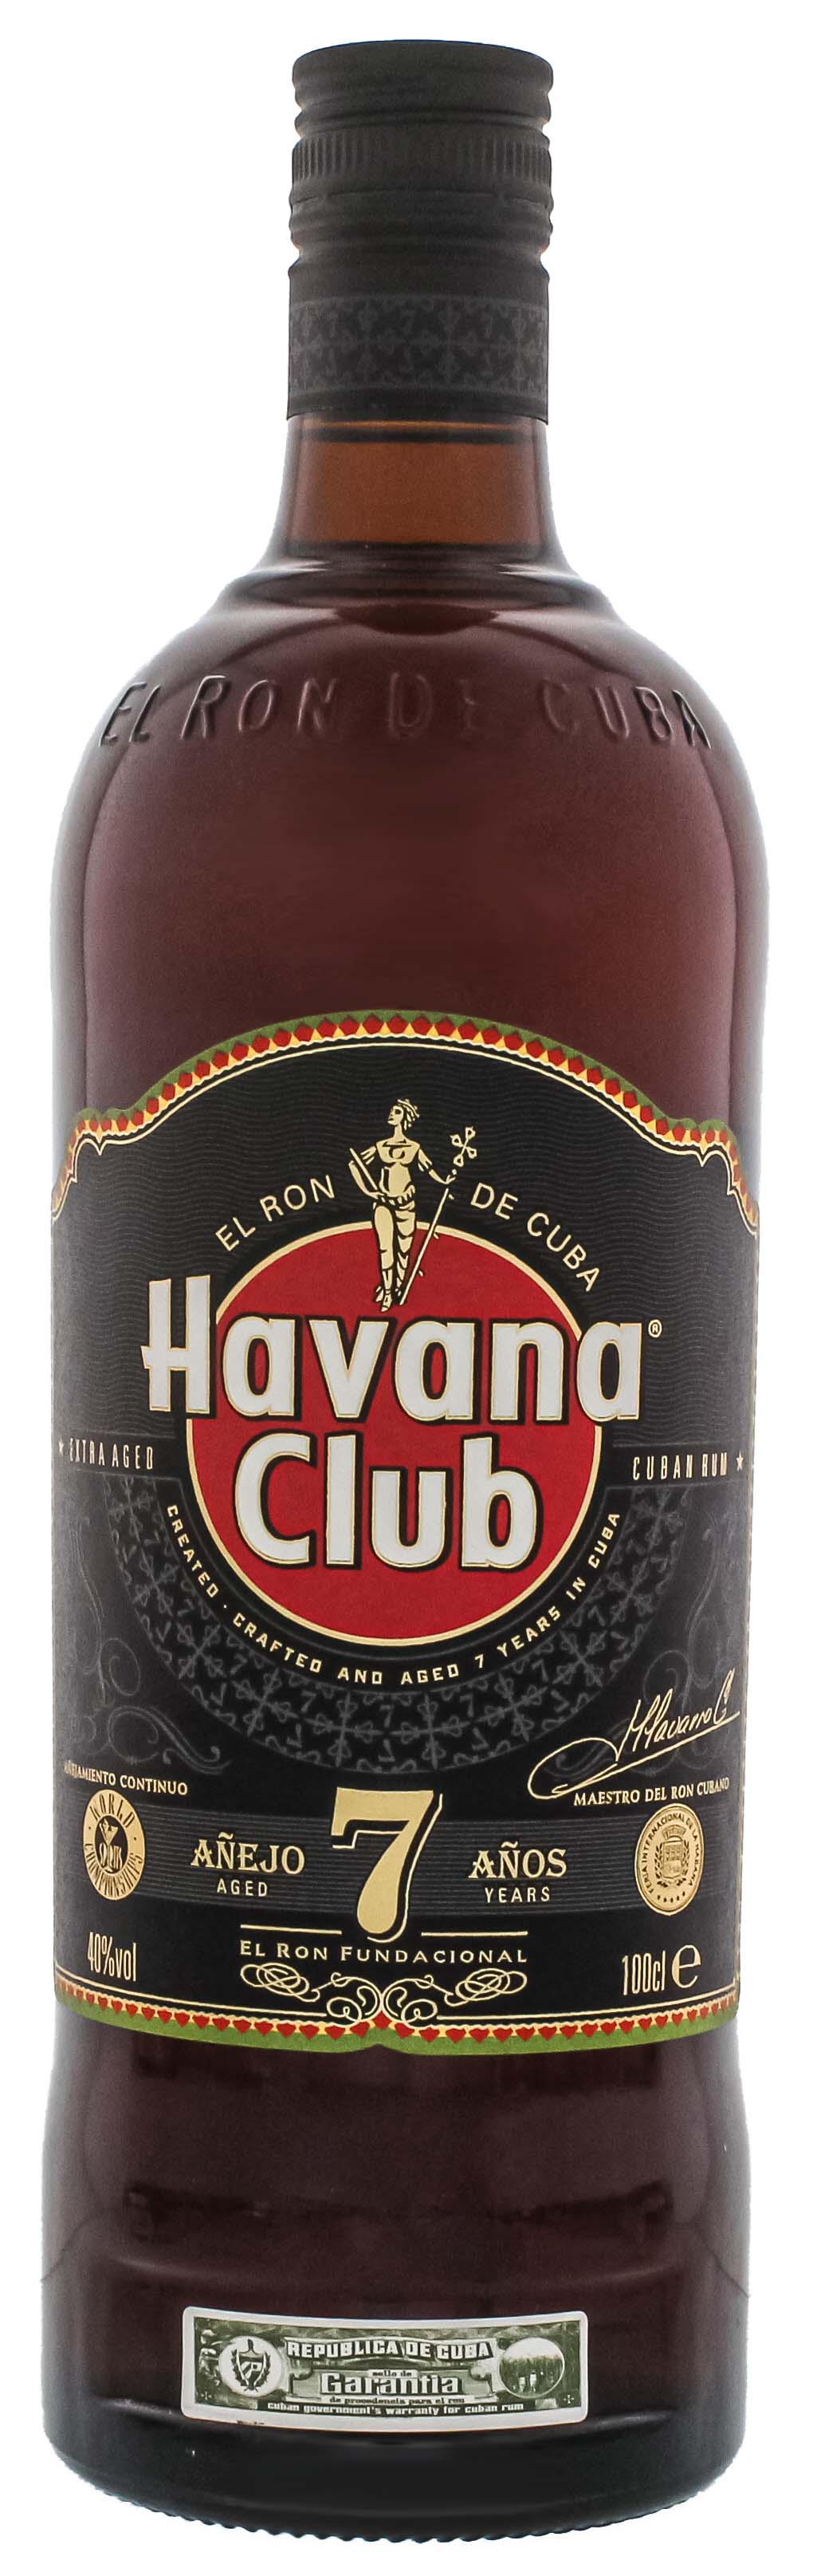 Havana Club Anejo Rum 1 Shop Jahre Liter Rum kaufen 7 Online im